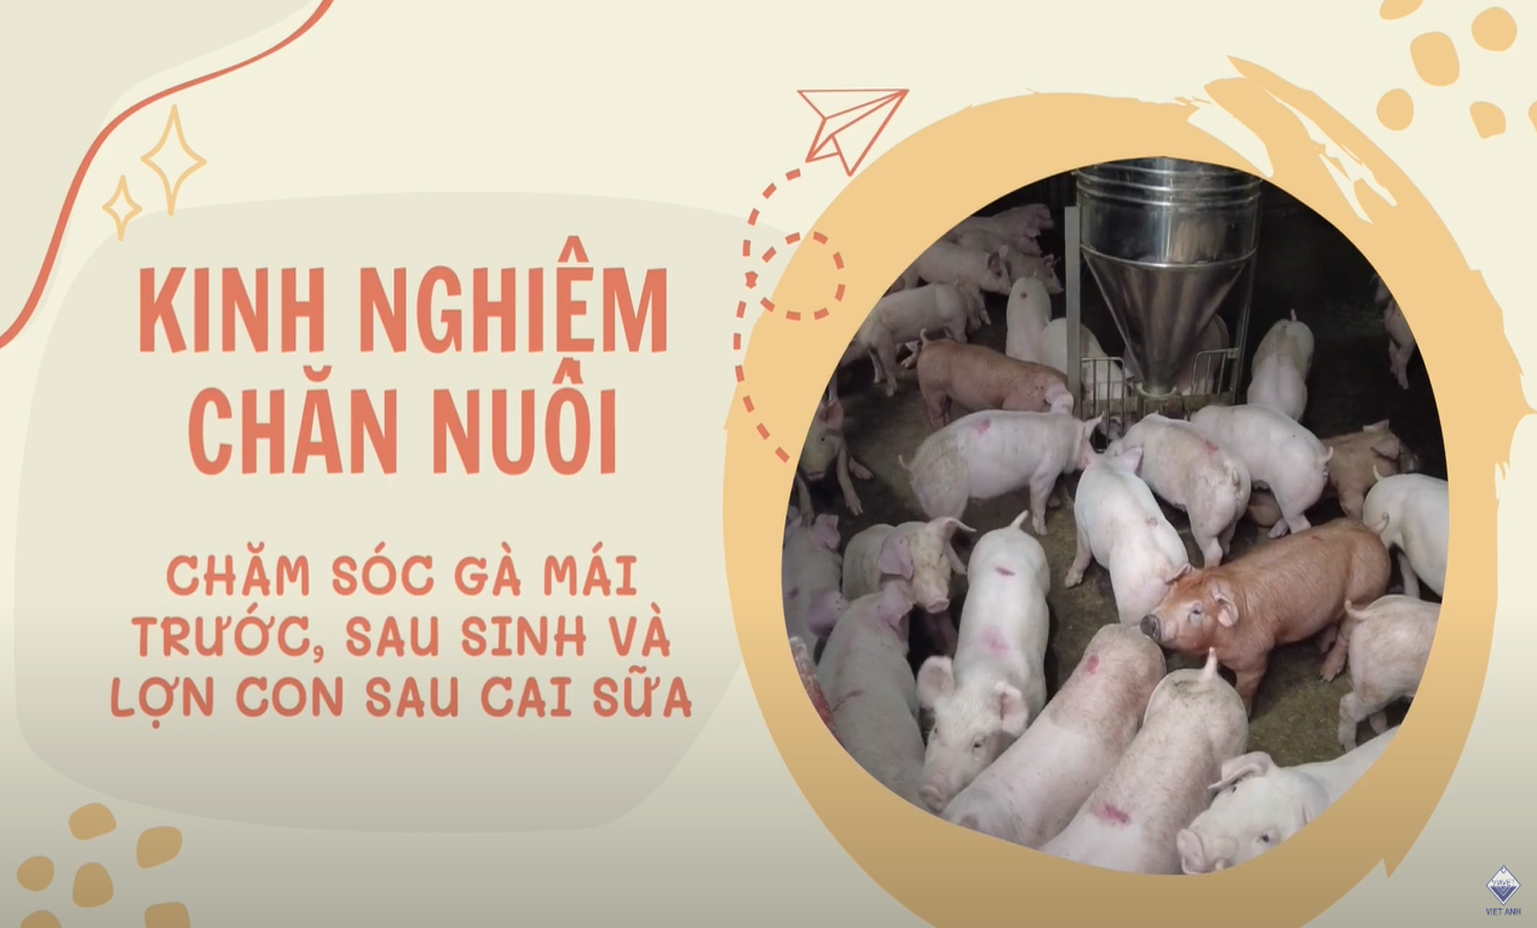 Chăm sóc lợn nái trước sau sinh và lợn con sau cai sữa